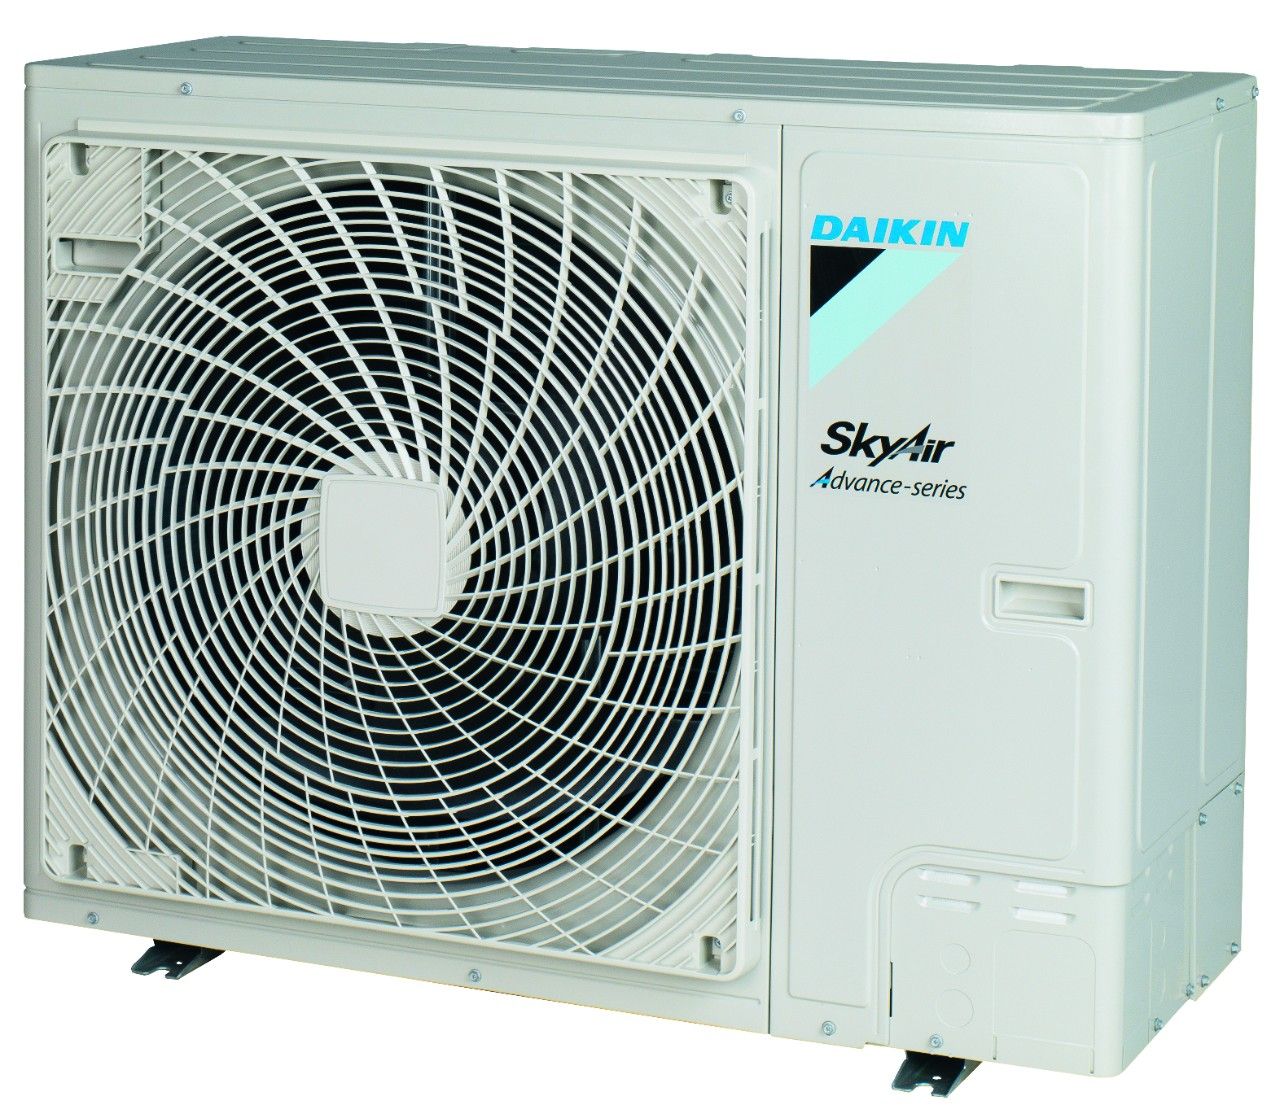 Fdxm-f9 / rza-d - groupes de climatisation & unités extérieures - daikin - afficheur à 7 segments_0